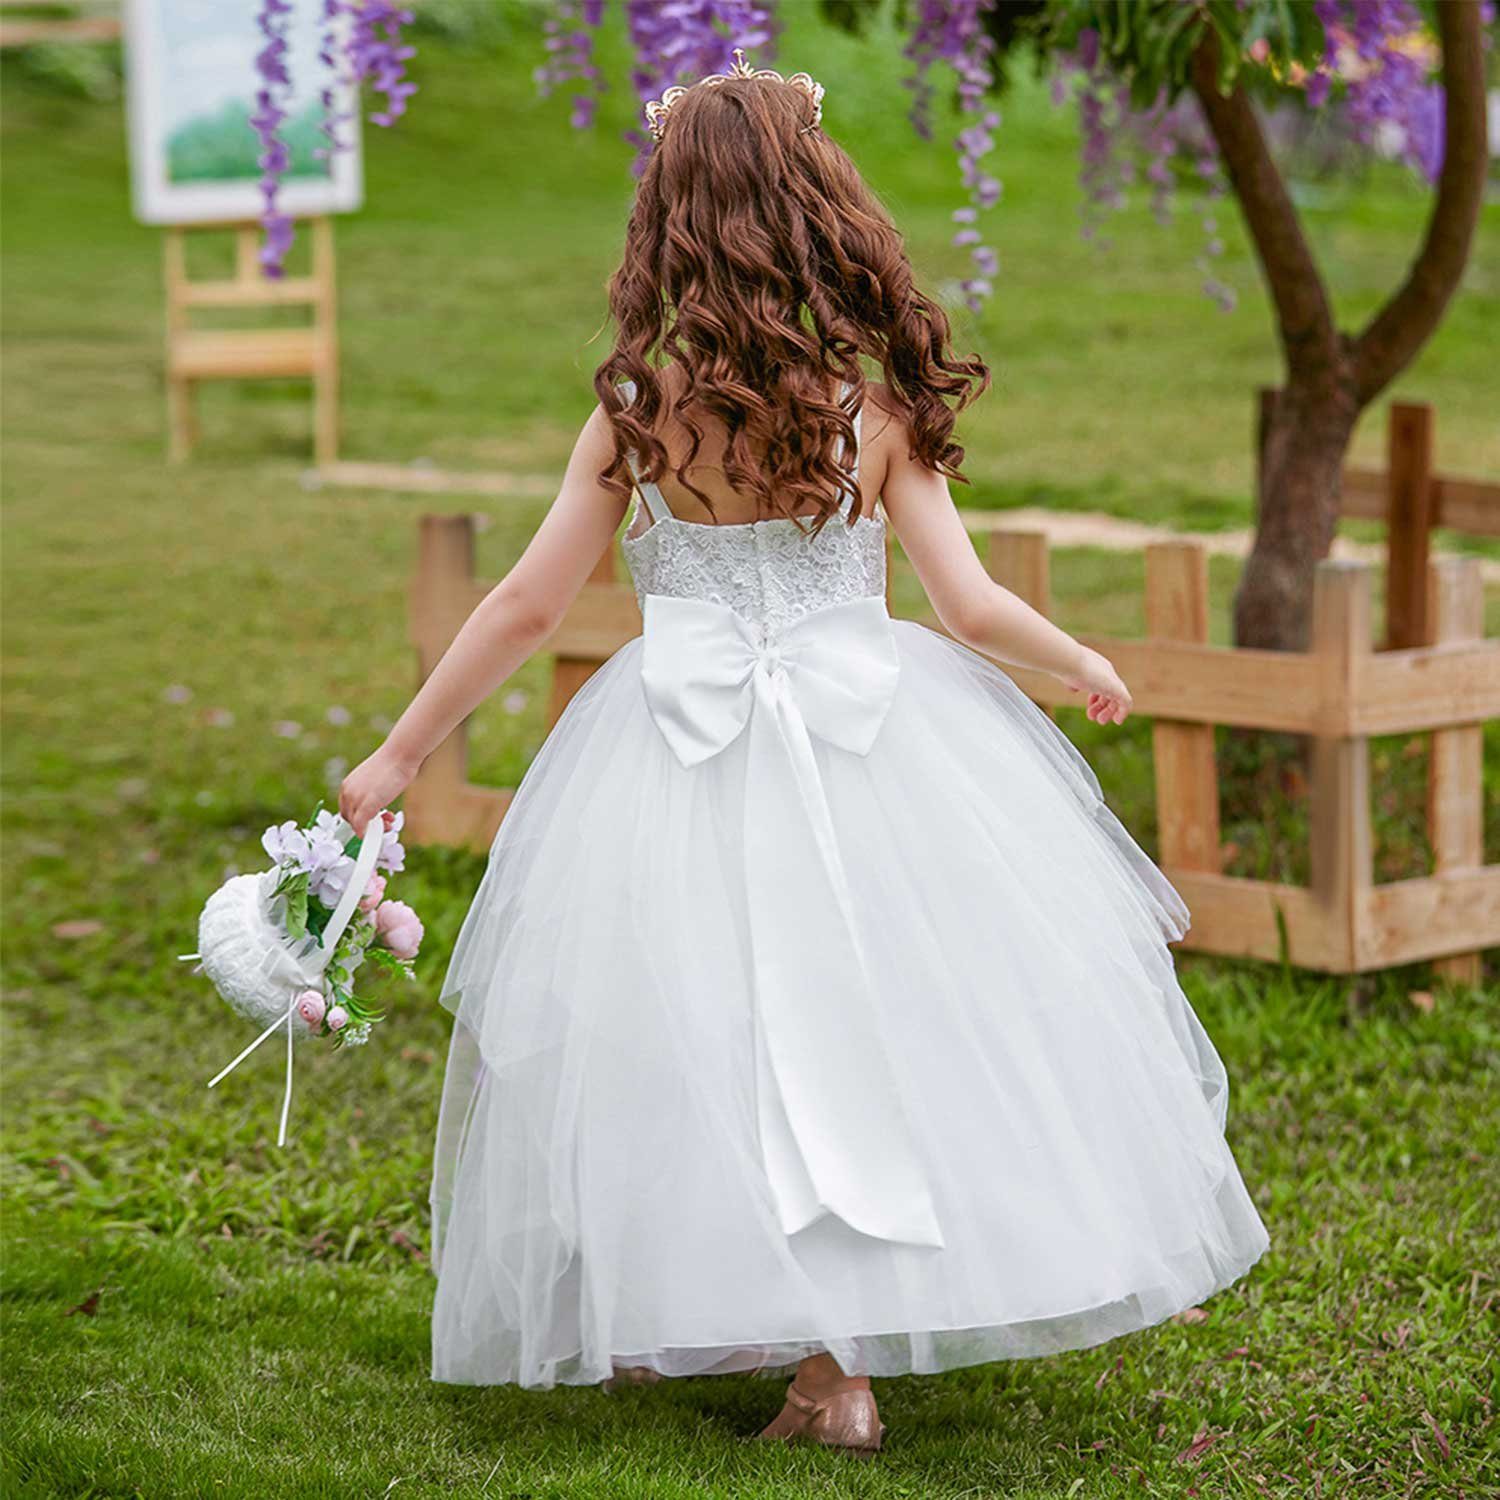 Daisred Partykleid Mädchenkleider Prinzessin Kleidung Weiß Performance Kleider